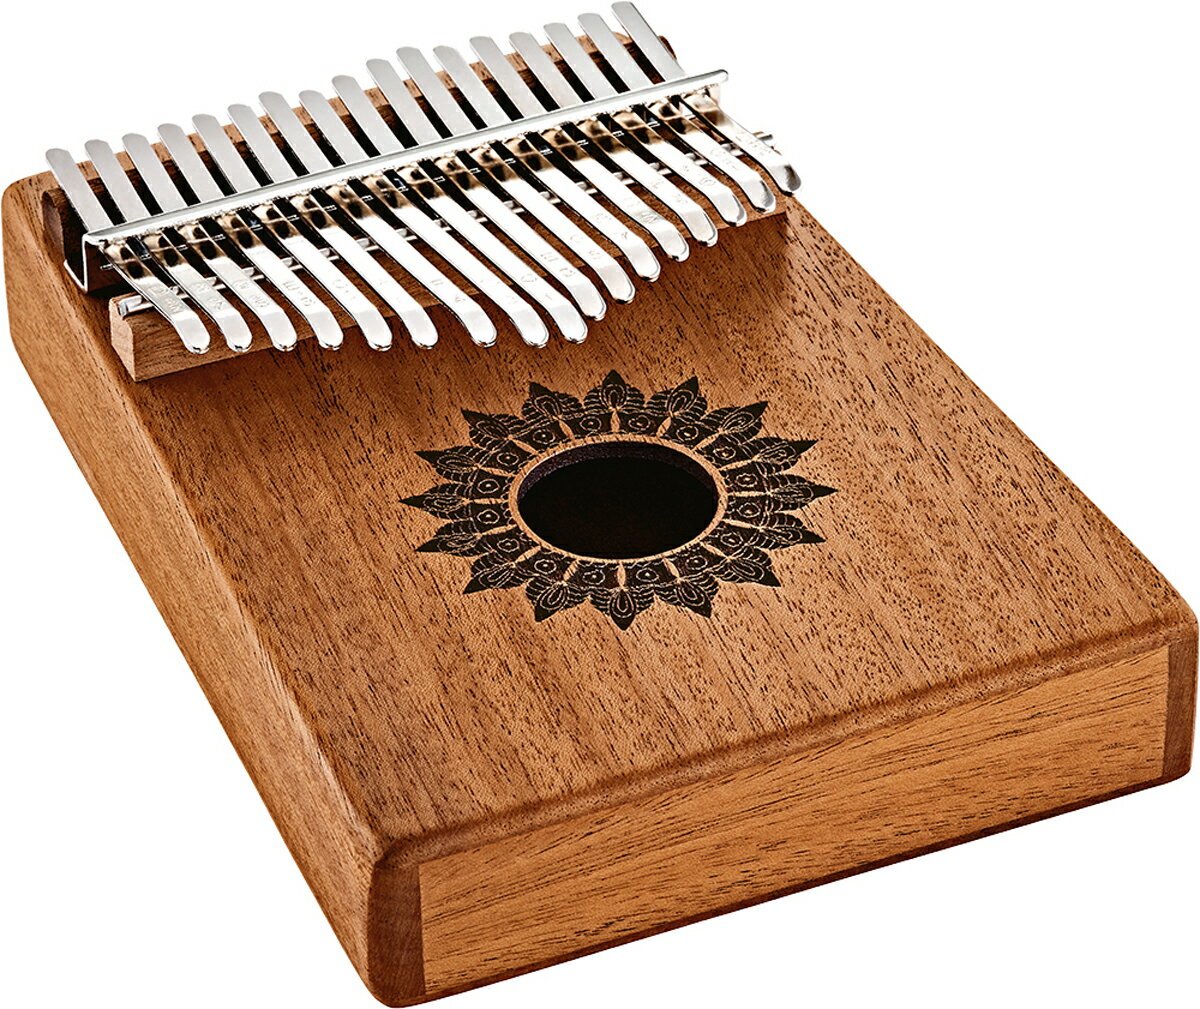 MEINL KL1708H Sonic Energy カリンバ SOUND HOLE KALIMBAS カリンバはアフリカを発祥とする楽器です。何世紀にも渡って愛され続けている楽器で『ムビラ』や『サンサ』また『親指ピアノ』という名前でも知られています。共鳴部となる木製の箱に金属製のリードが取り付けられており、リードを親指で弾くことで金属的で繊細なサウンドを奏でます。 サウンドホール・カリンバは素晴らしいサウンドを奏でるメロディ楽器で、サウンドはもちろんデザイン面においてもユニークな特徴を持っています。C メジャースケールに調律された 17 の鍵盤により常に一定のキーで演奏できるため、演奏中に音を外す心配がありません。素材は各モデルに高品質なメイプル、マホガニー、アカシア材が使用されています。伝統的な形状のサウンドホールがウォームな音色とロングサステインを生み出します。 カリンバには専用ケースが付属し、キズ等のダメージから楽器をしっかり保護します。また楽器の掃除や保管用としてマイクロファイバークロスとコットンバッグも付属します。さらにチューニングハンマーも同梱しており、必要に応じてカリンバを調律することもできます。 重量：312g 素材：Mahogany 鍵盤：17 チューニング：C Major / d''，b'，g'，e'，c'，a，f，d，c，e，g，b，d'，f'，a'，c''，e'' 付属品：専用ケース、コットンバッグ、マイクロファイバークロス、チューニングハンマー